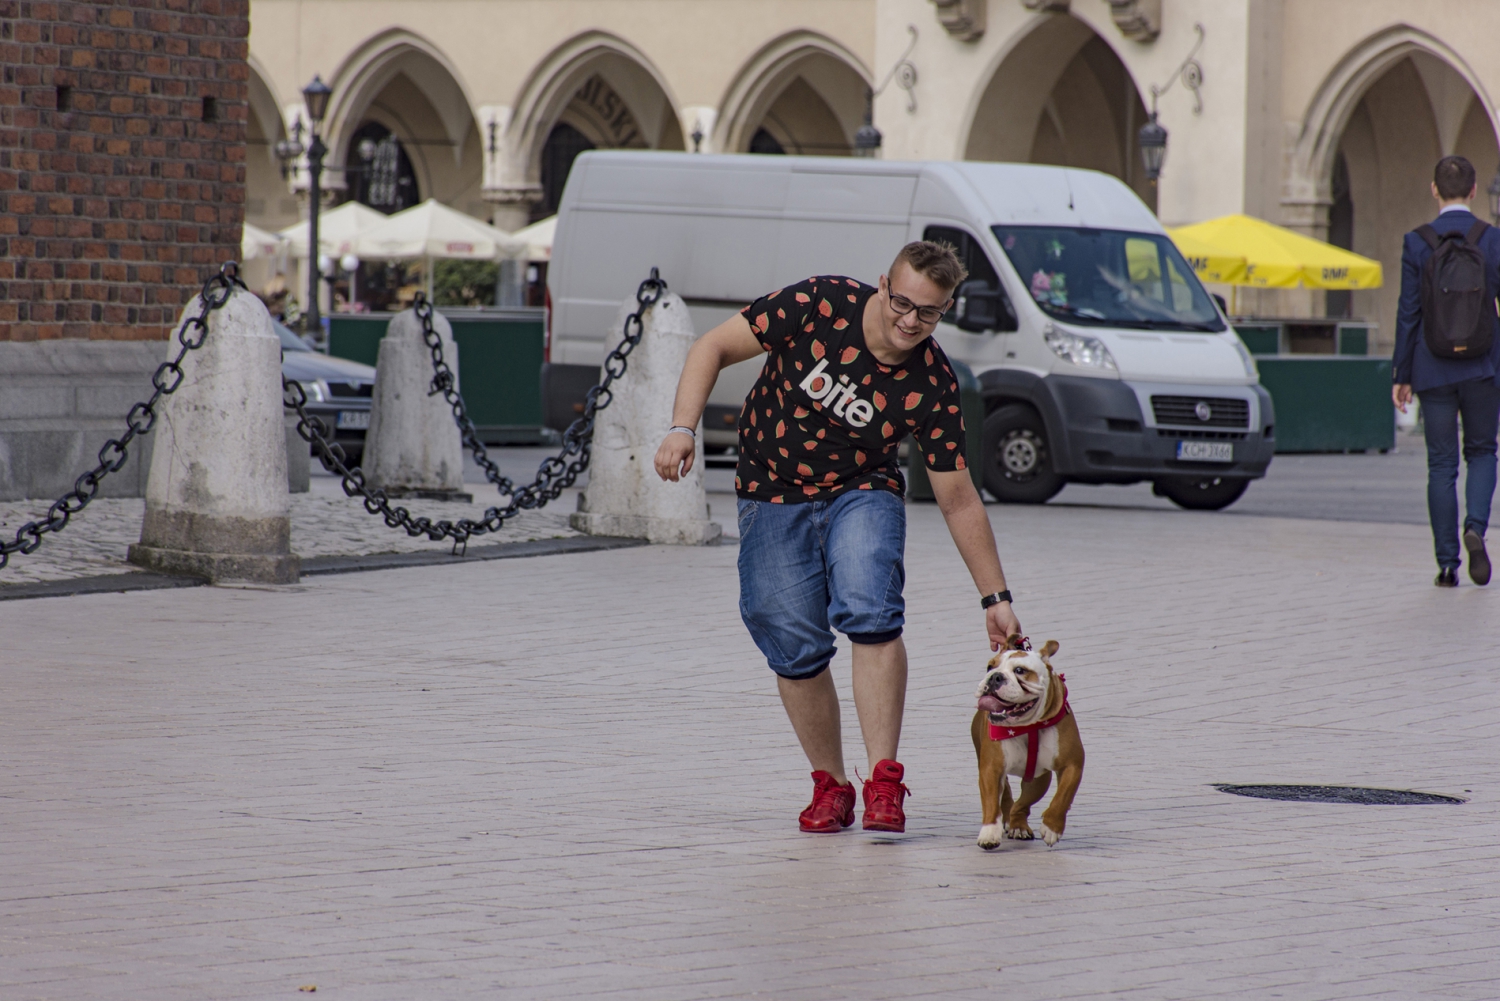 Bulldog Bar in Krakow | My Guide Krakow